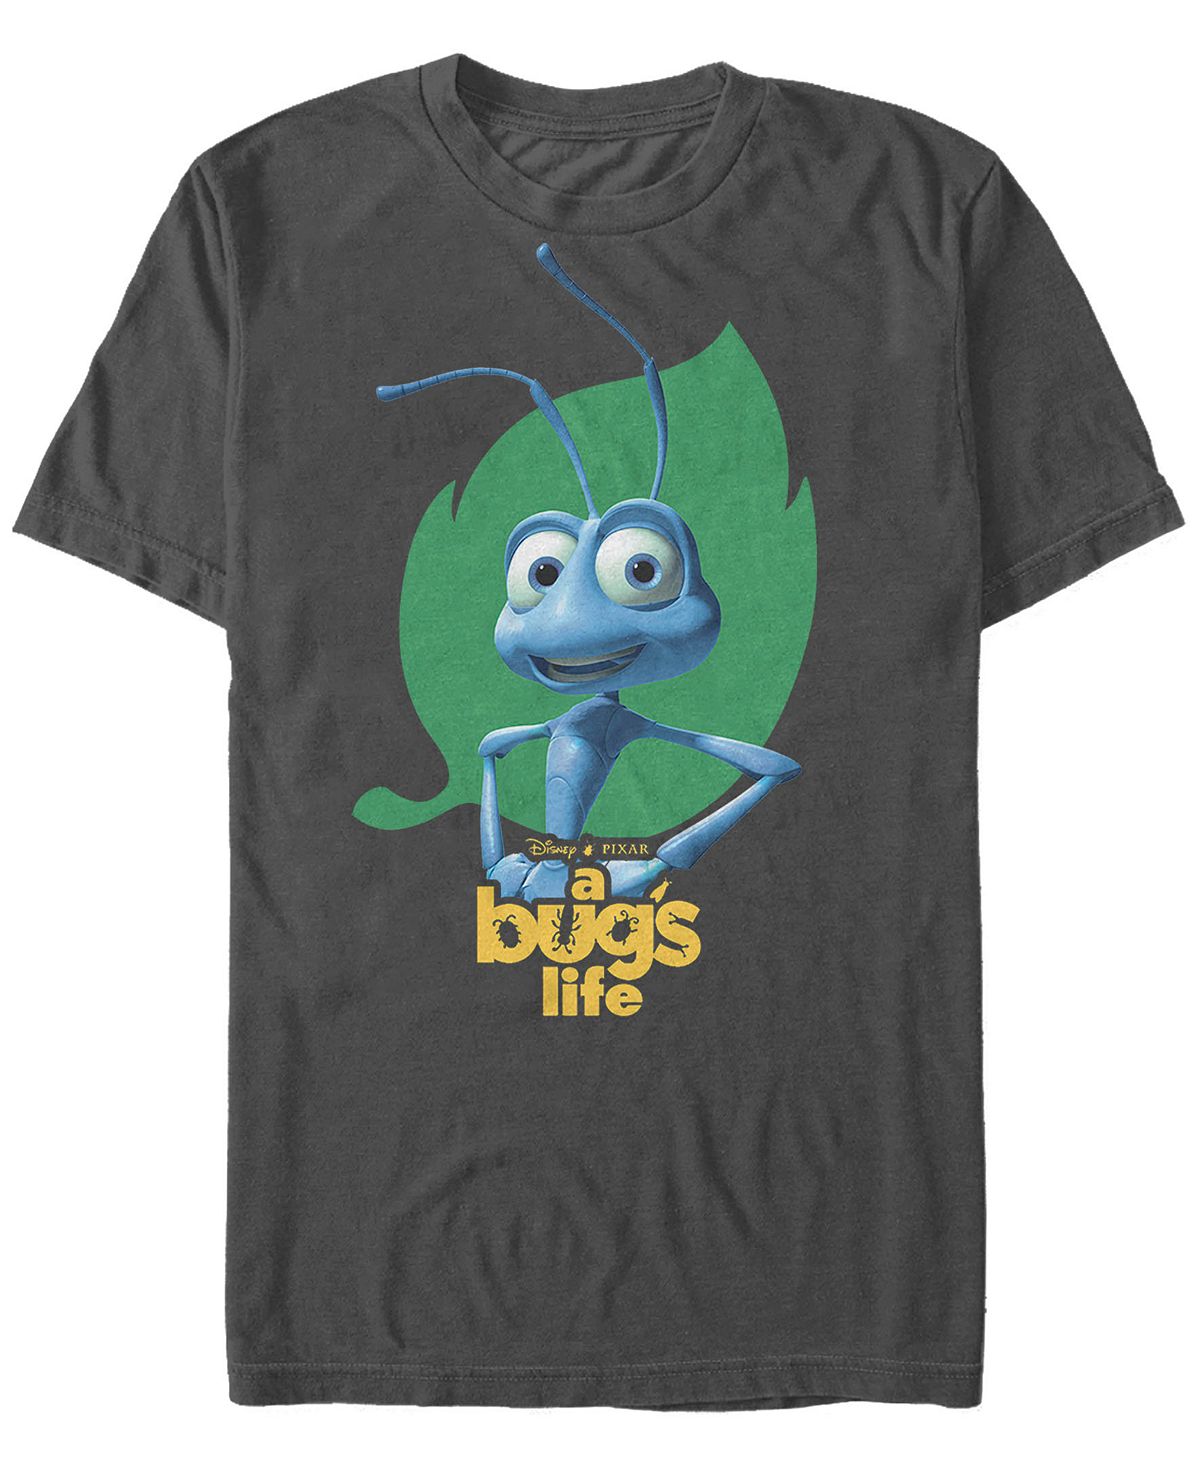 Мужская футболка с коротким рукавом с логотипом disney pixar bugs life flik hips Fifth Sun, мульти наручные часы flik flak icy party